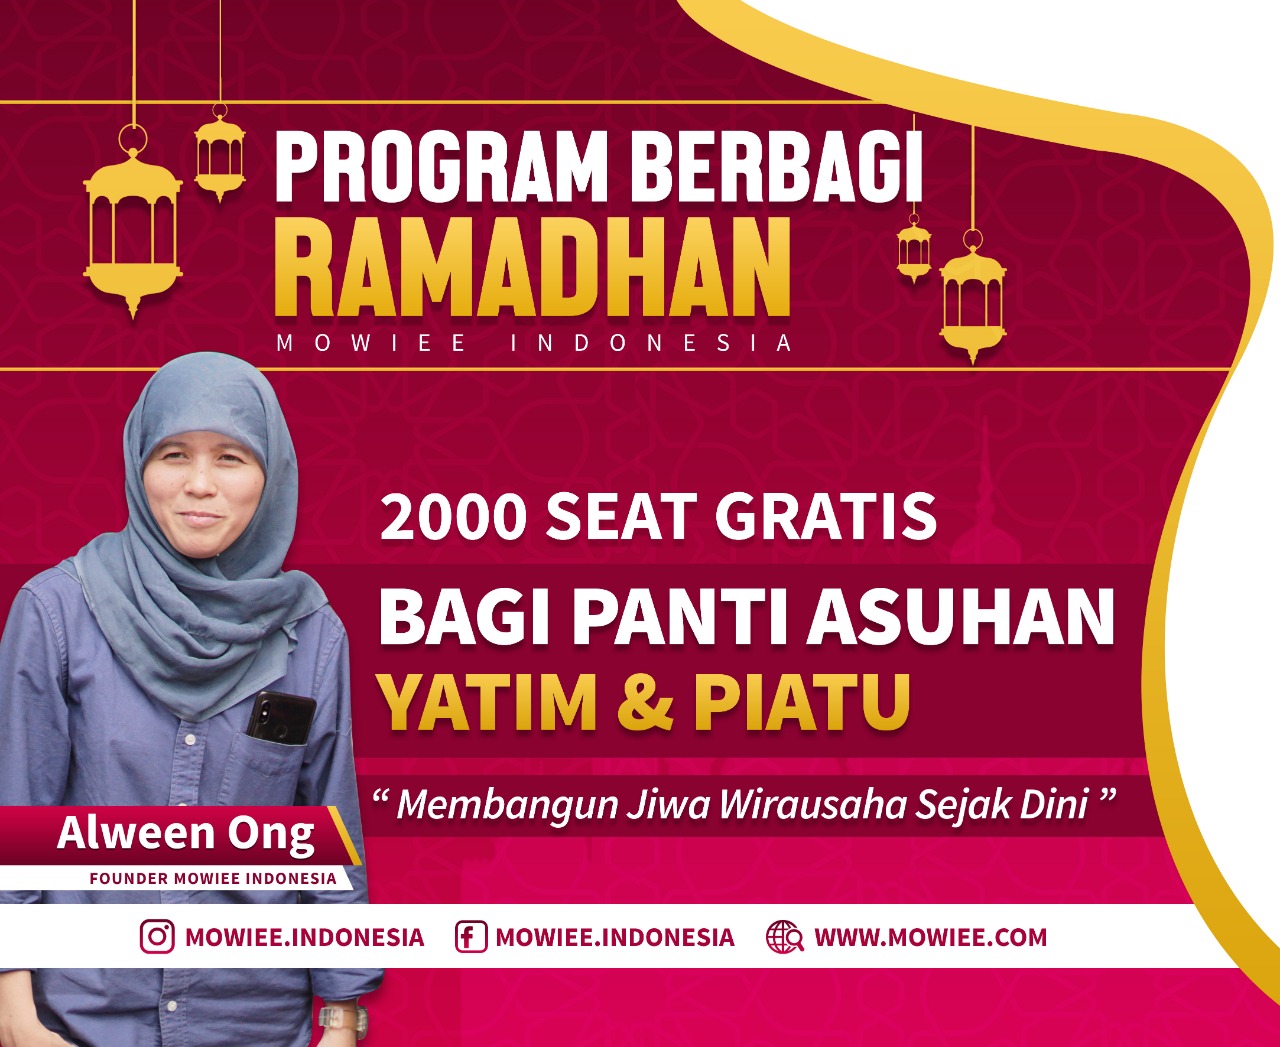 Ramadhan, 2000 Anak Panti Asuhan Akan Berwisata dan Belajar Wirausaha Gratis Bersama Mowiee